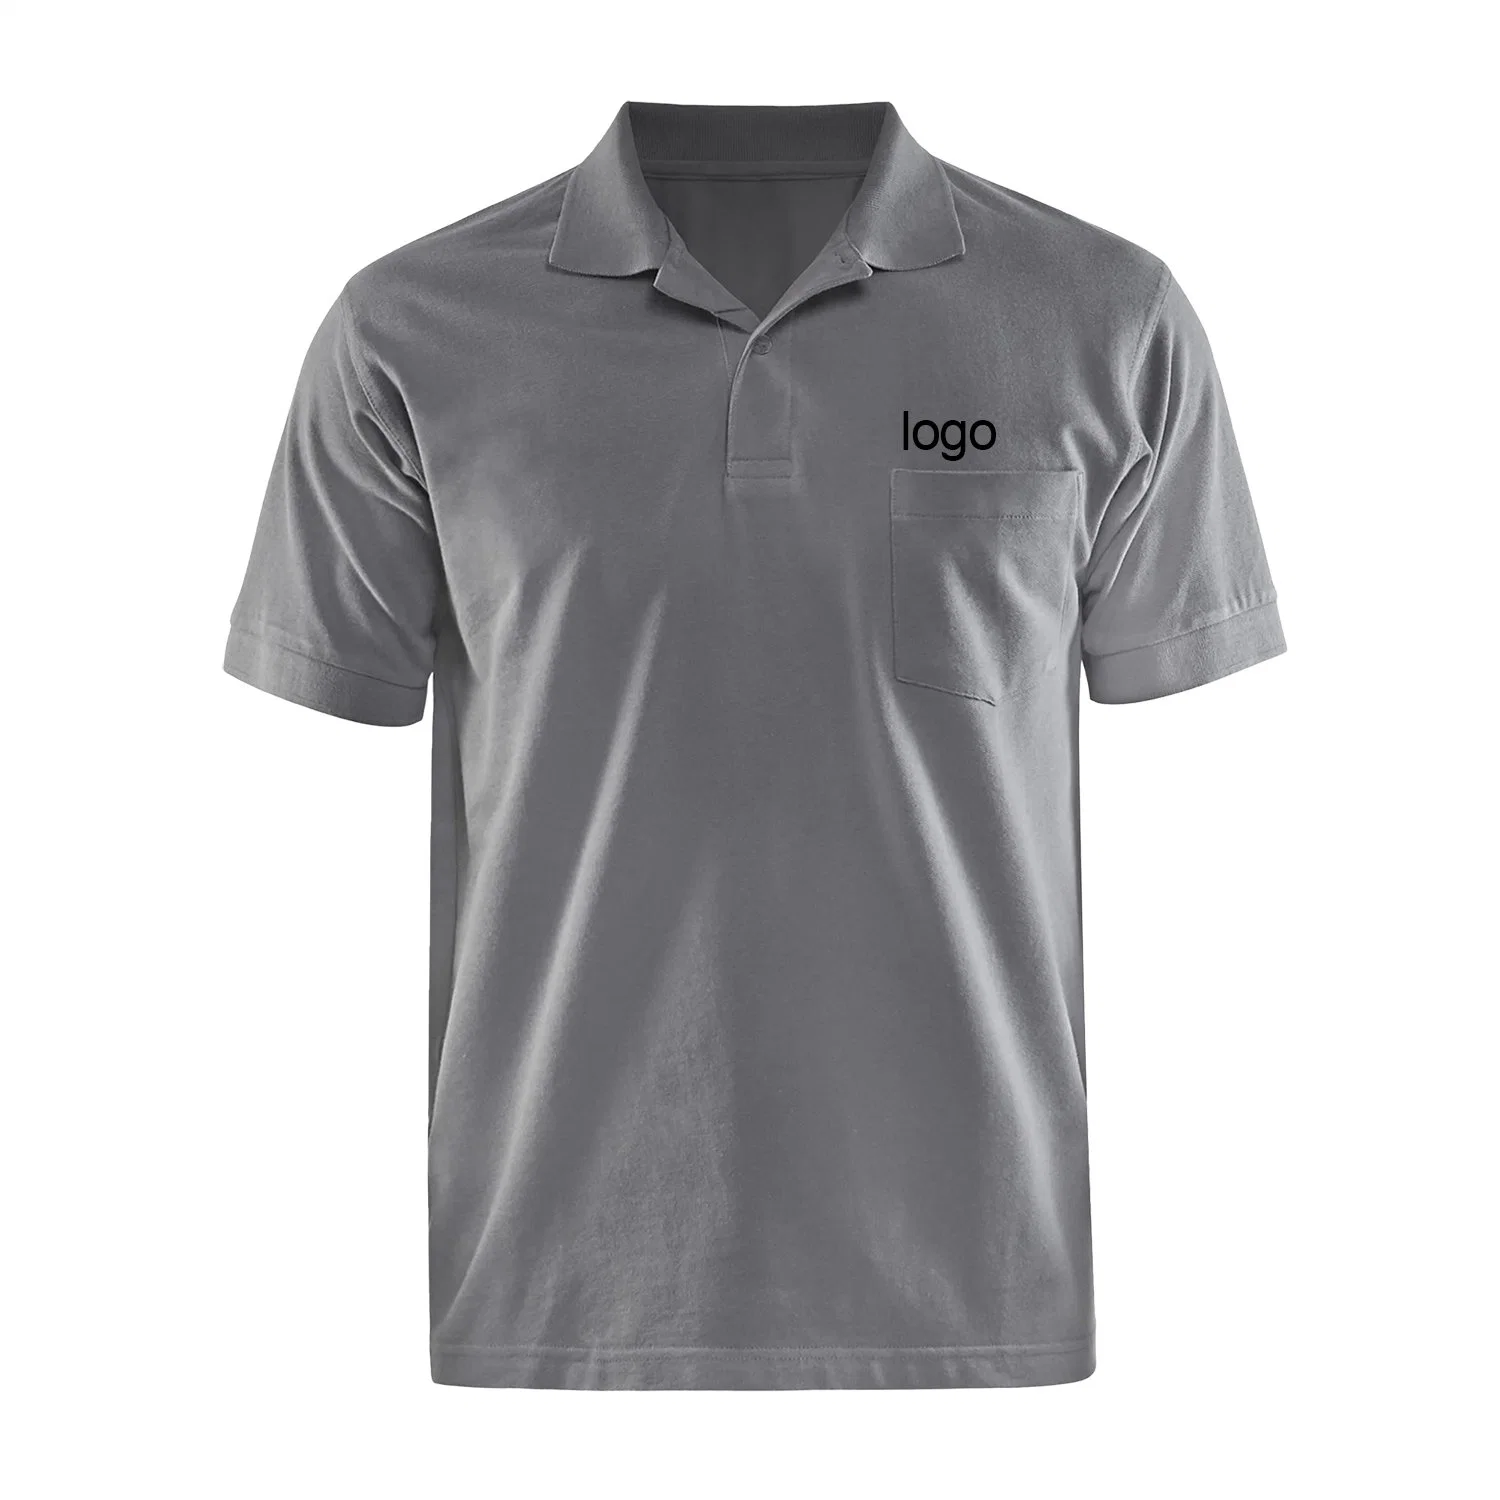 مصنعو المعدات الأصلية / ODM عالية الجودة ذكر الرياضة الغولف مصنع القمصان البيع المباشر قميص بولو بأكمام طويلة للرجال